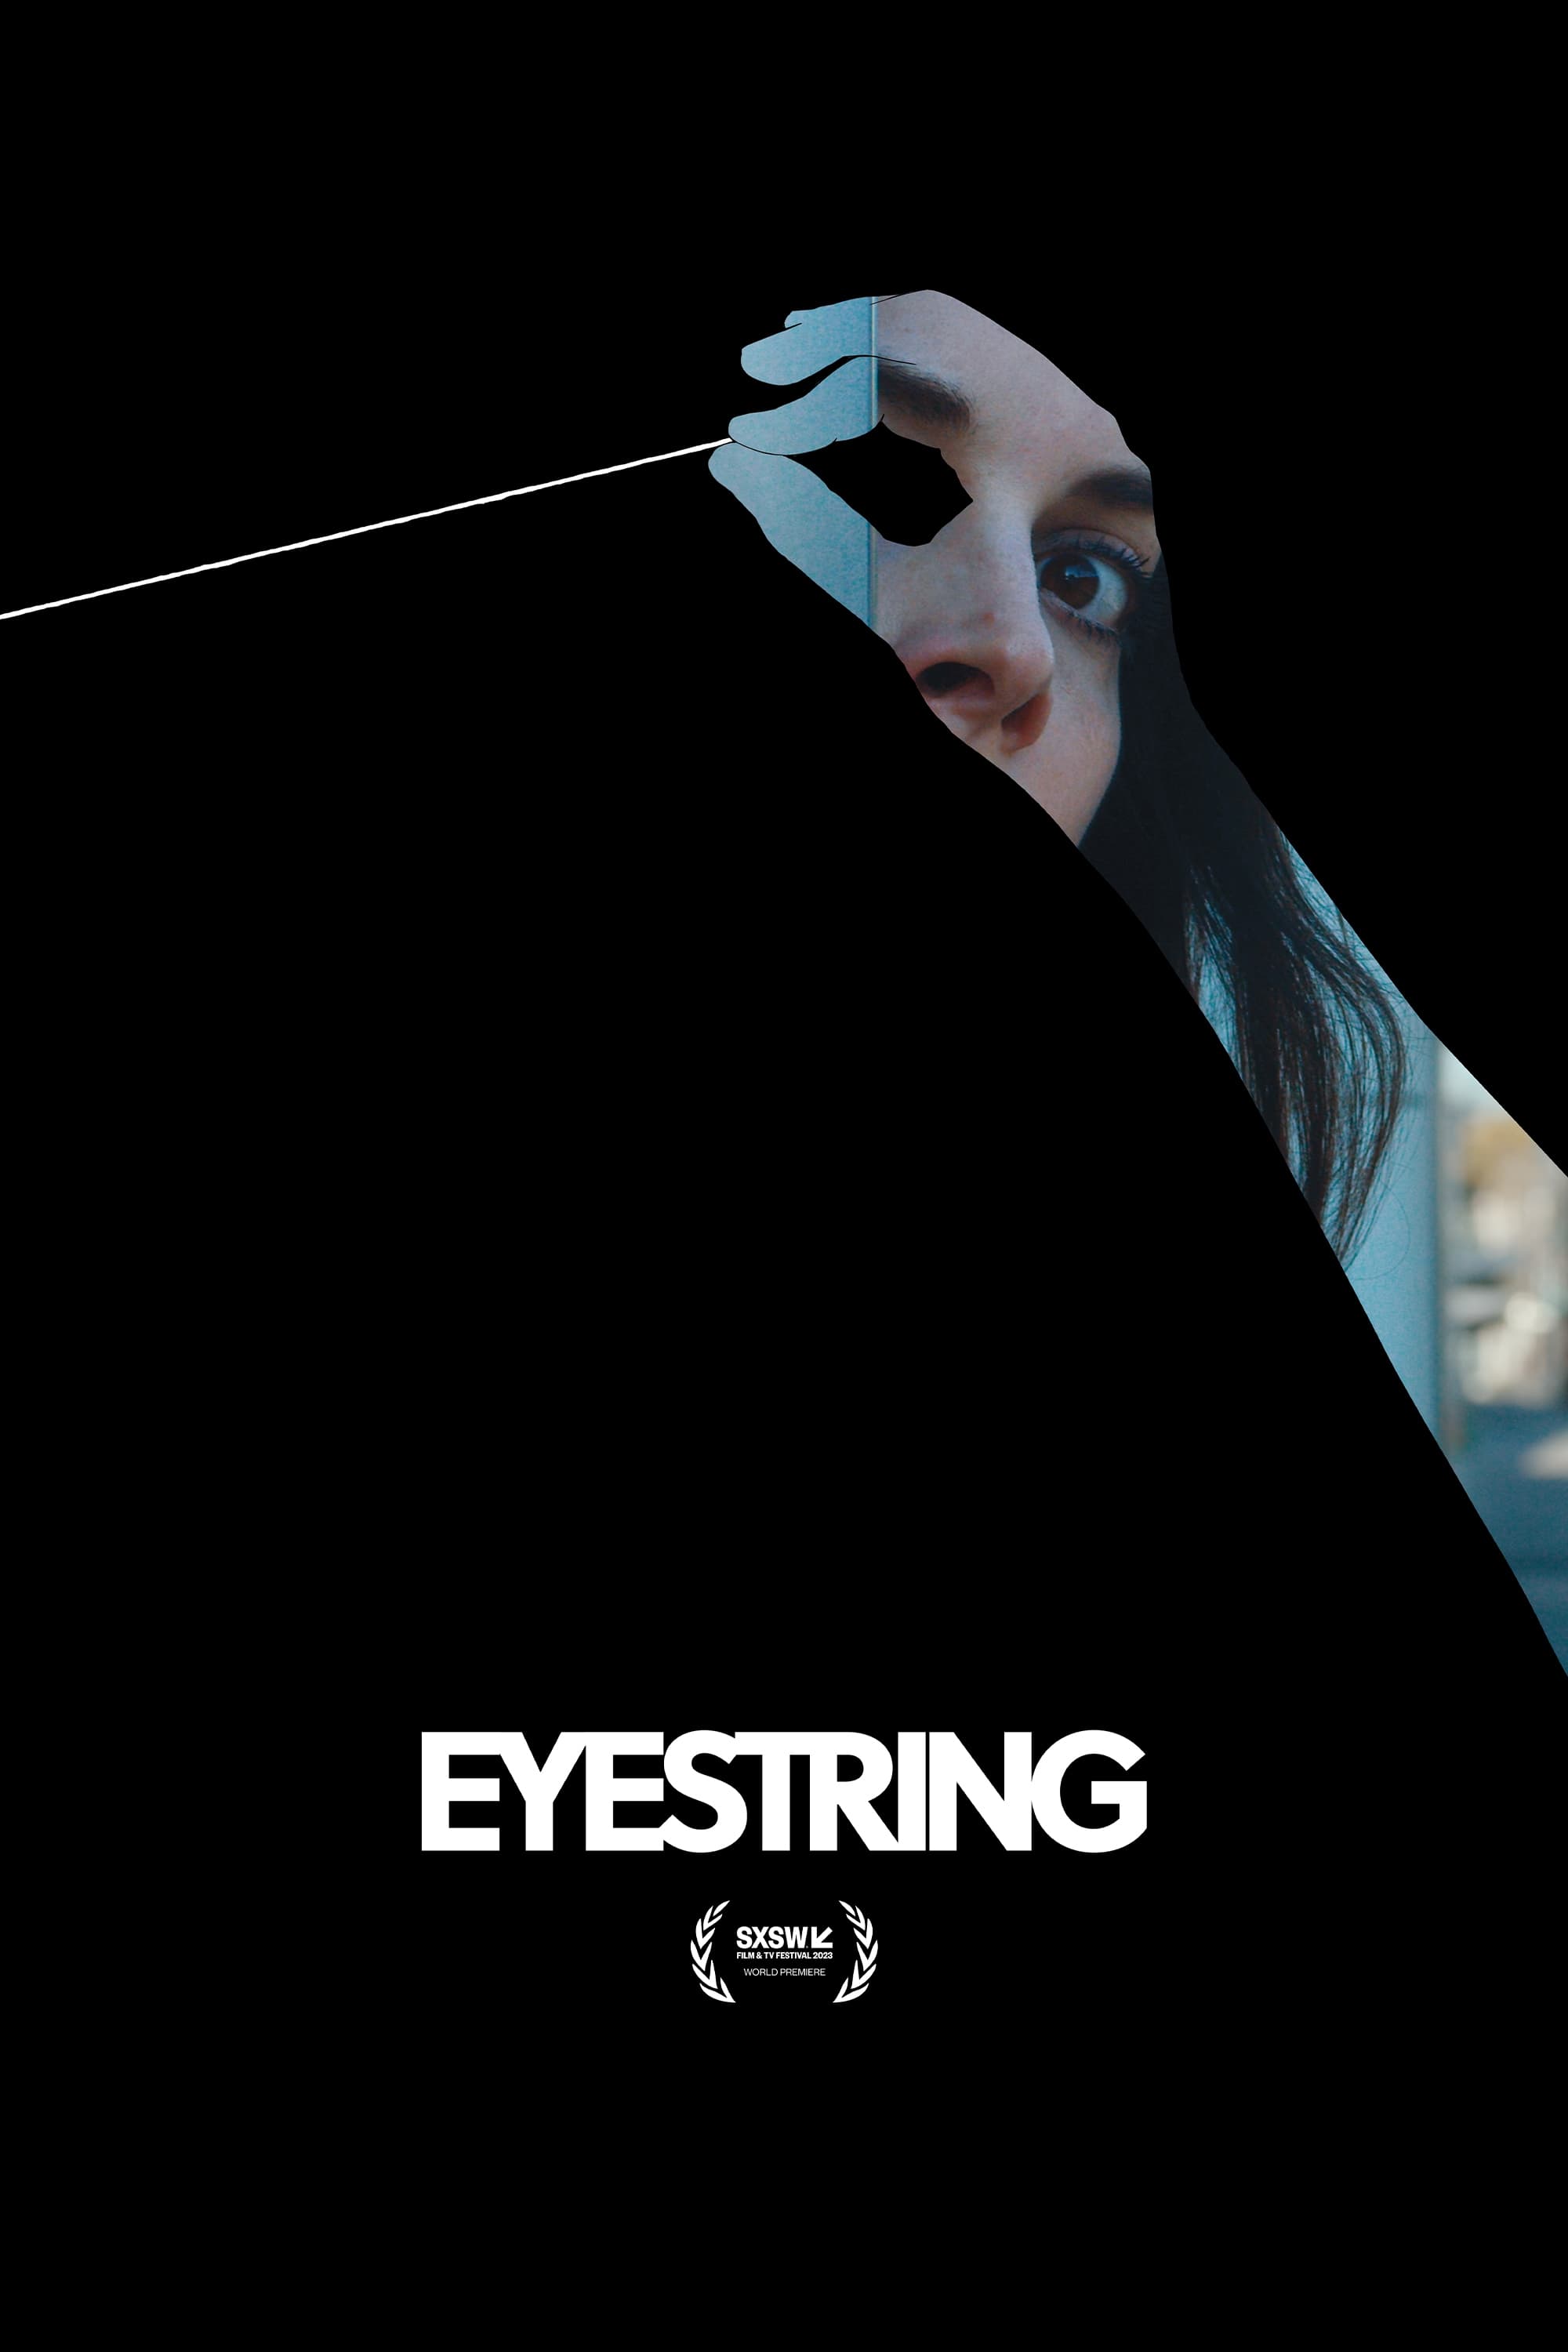 Eyestring